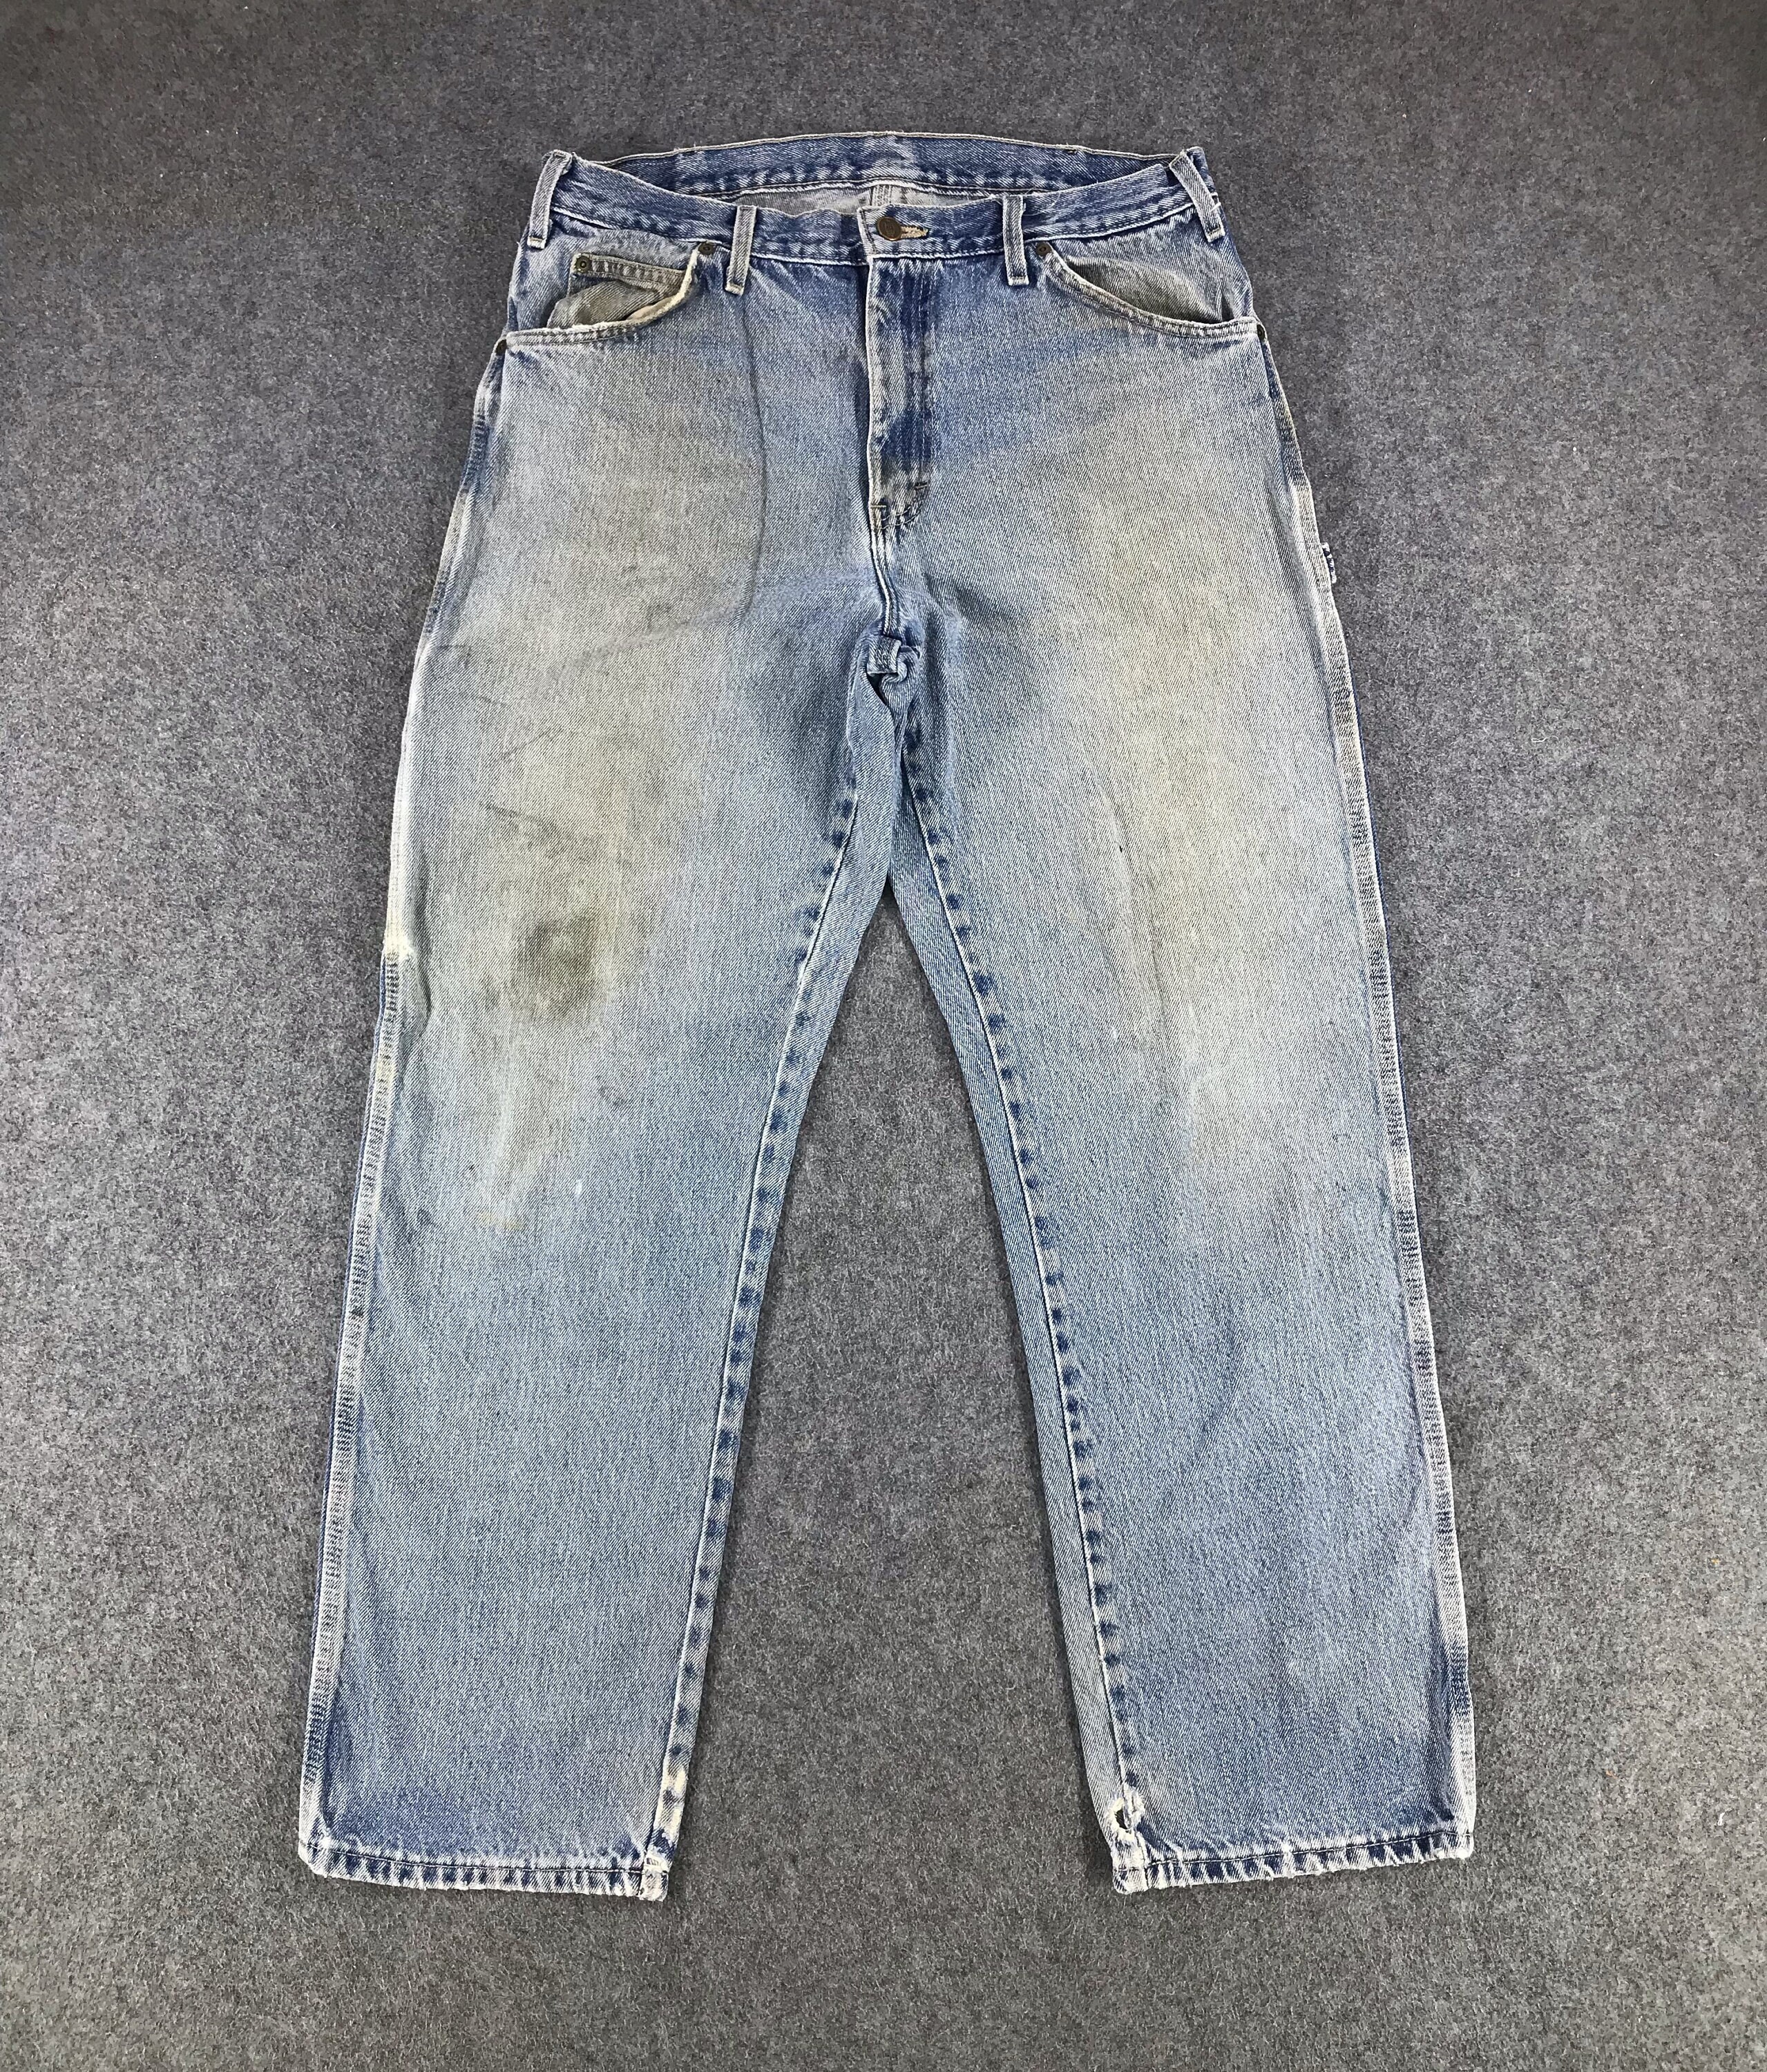 Vintage Light Wash Dickies Jeans 33x31 Dickies Distressed - Etsy